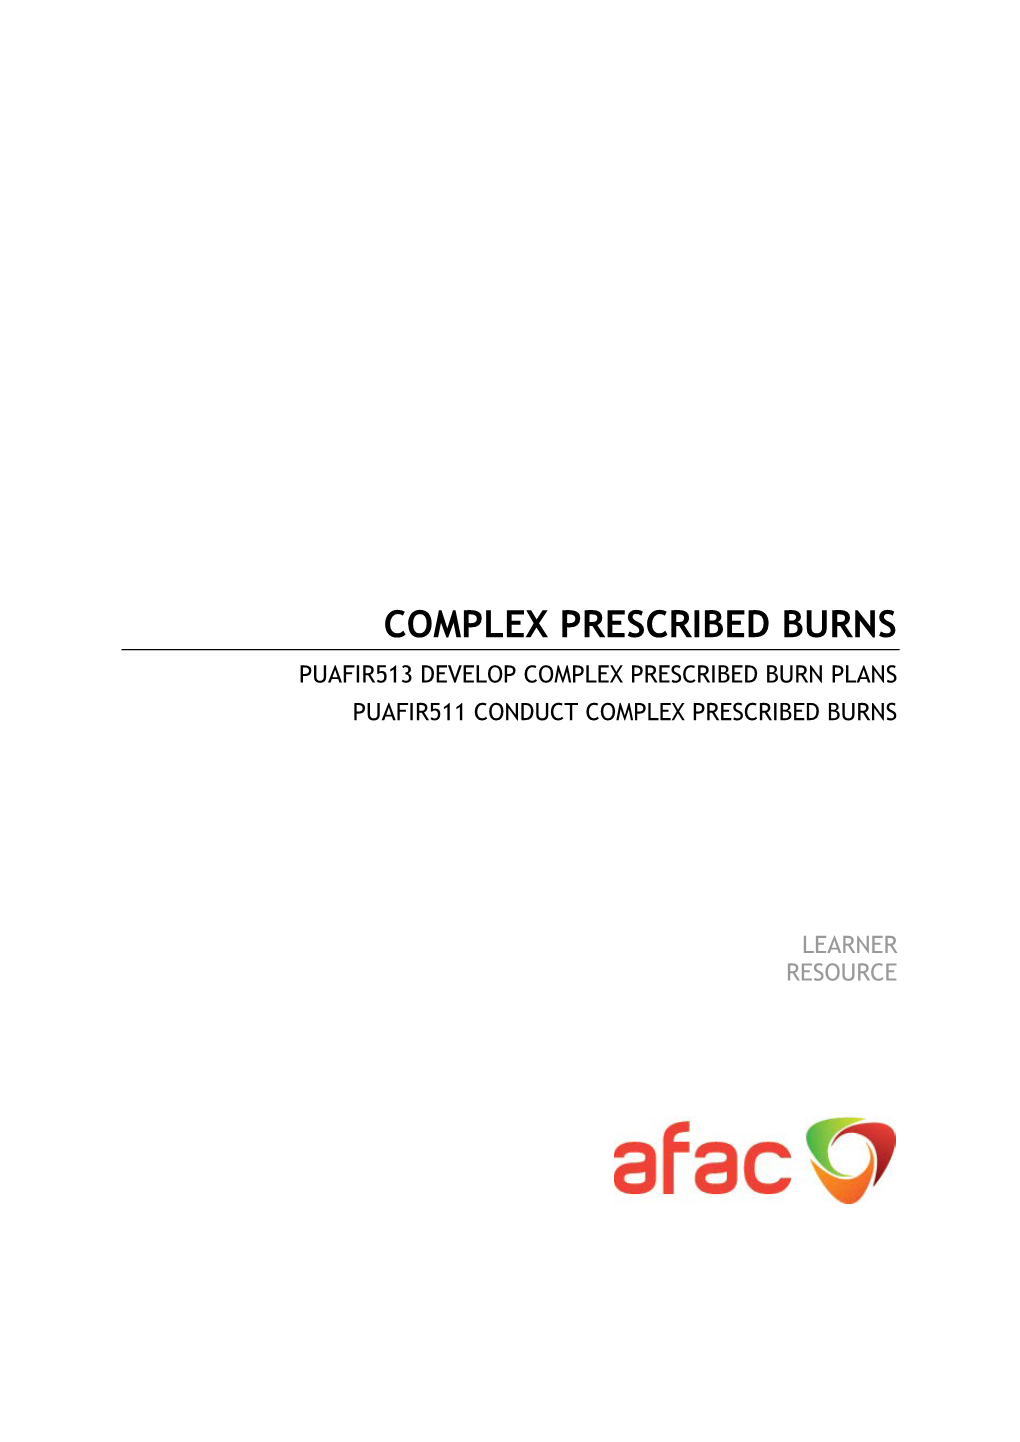 Complex Prescribed Burns Puafir513 Develop Complex Prescribed Burn Plans Puafir511 Conduct Complex Prescribed Burns